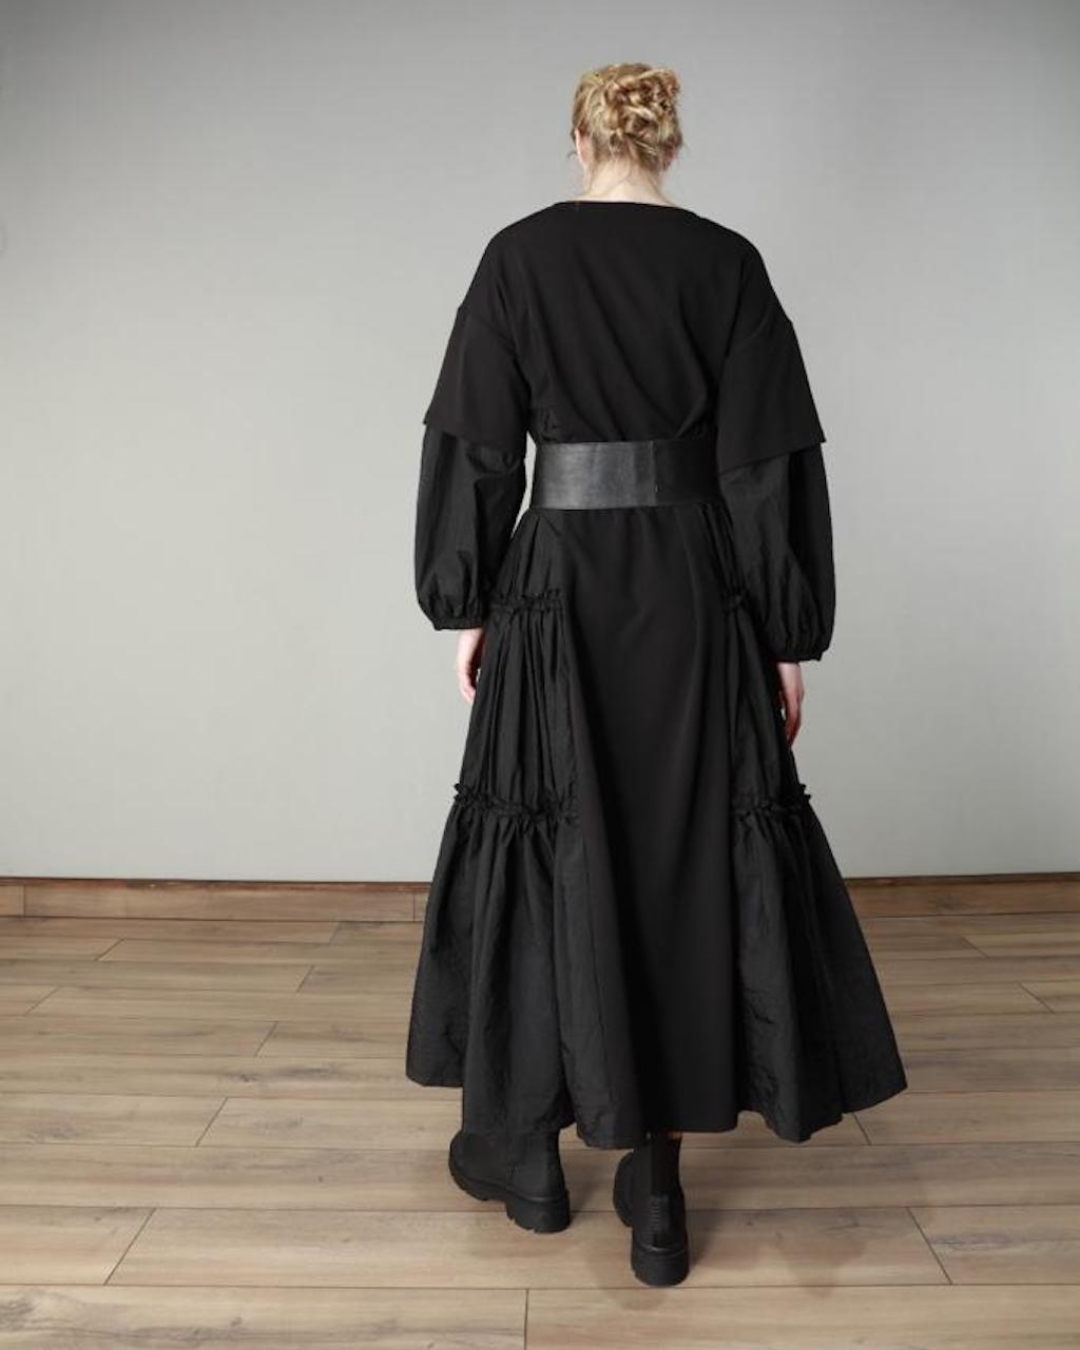 Fashion Forward Dress Design 22498 - Black